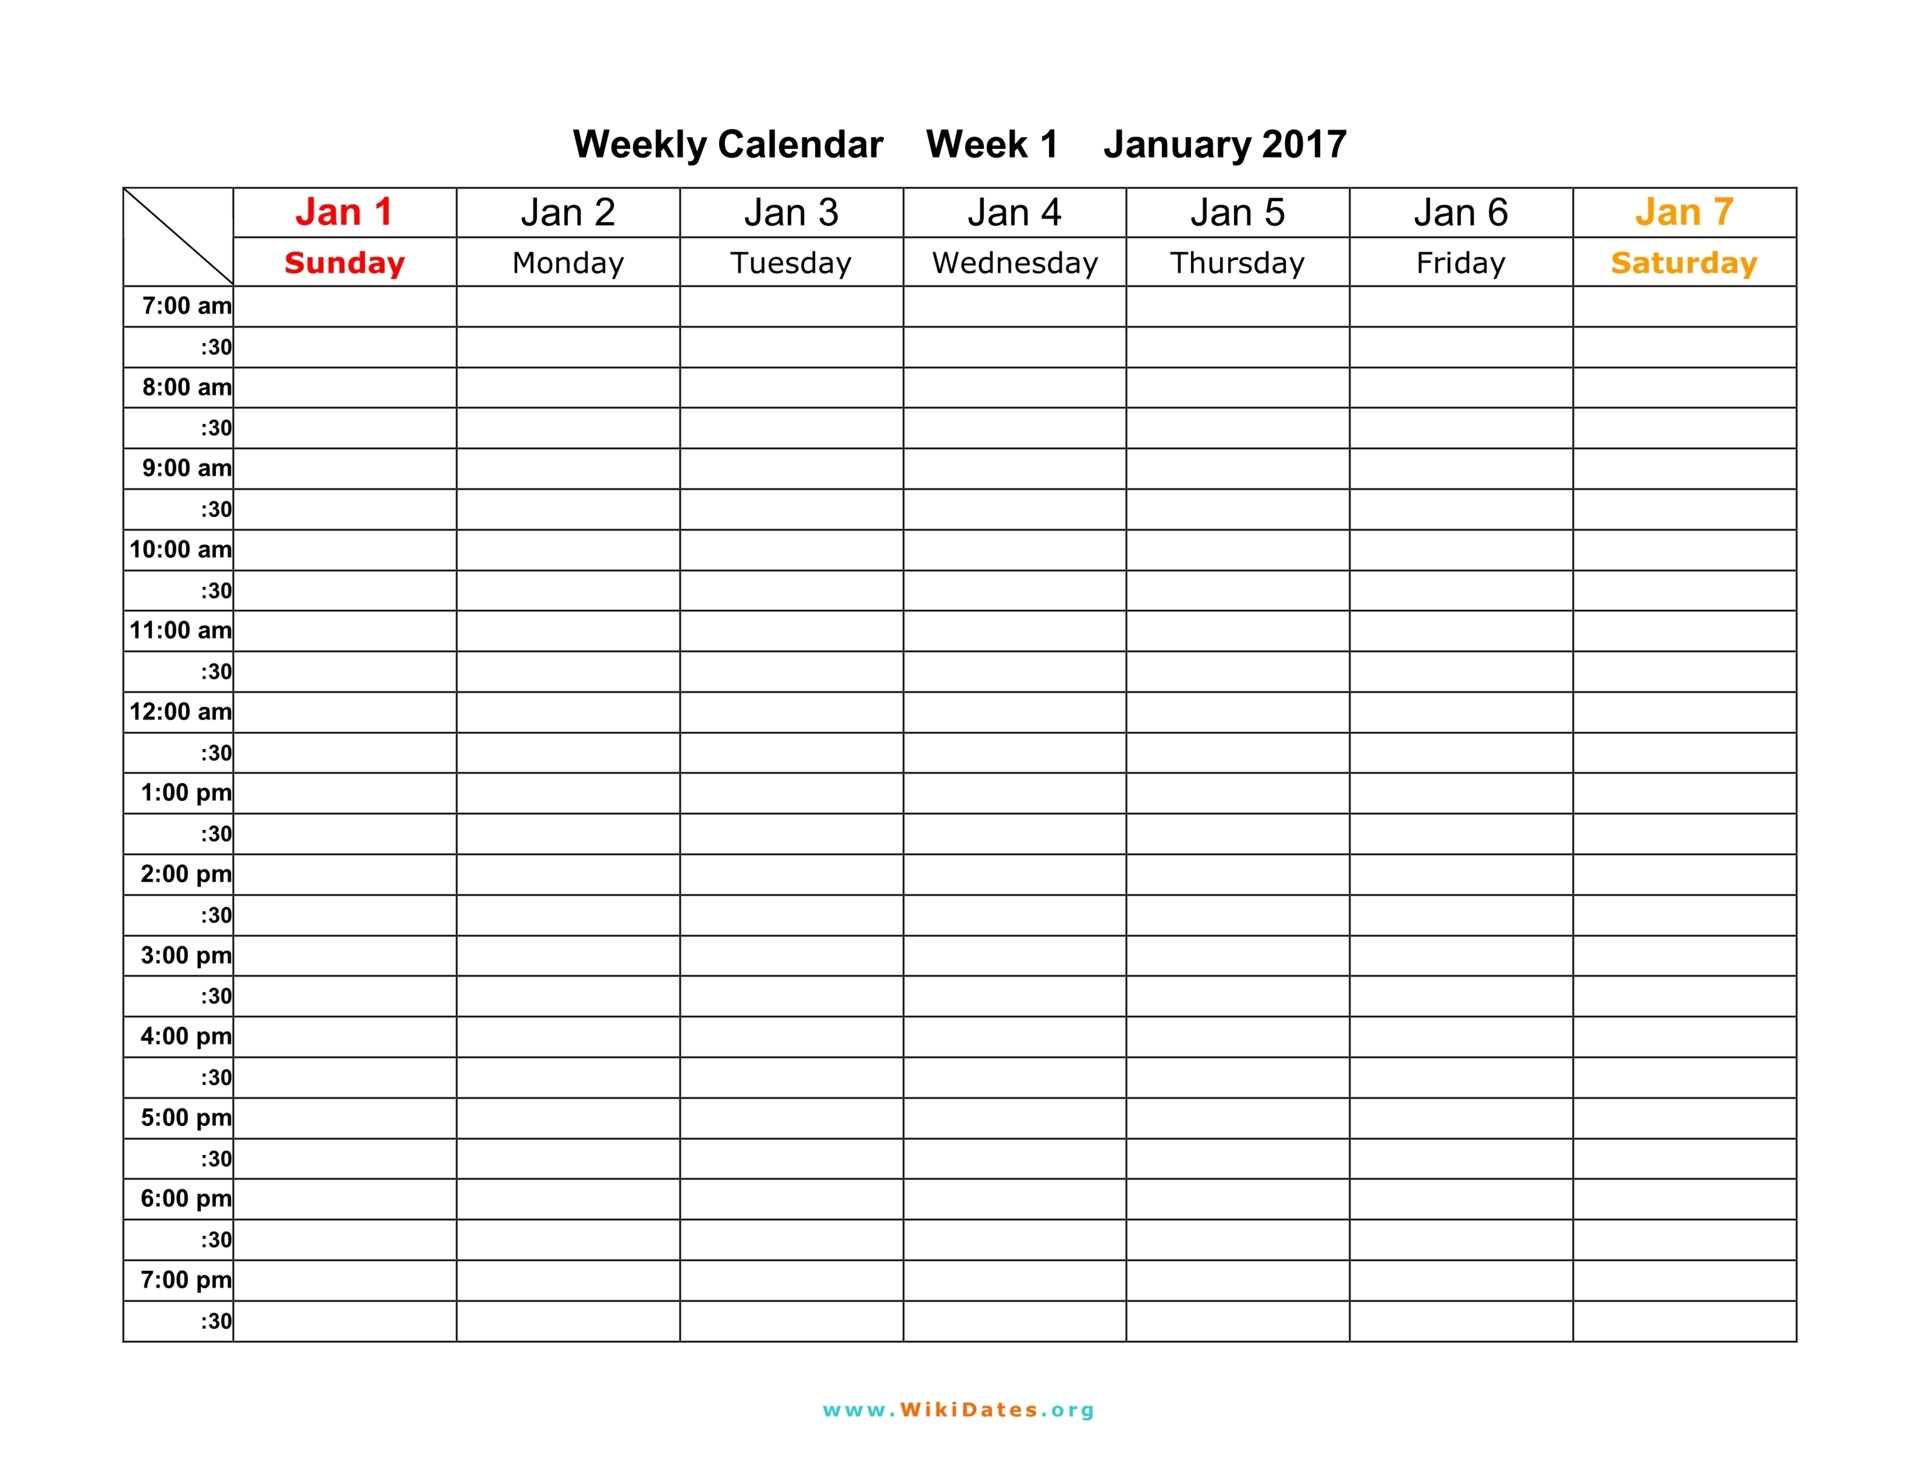 Work Week Calendar Template Free Weekly Schedule Template for Work Calendar 2 Excel